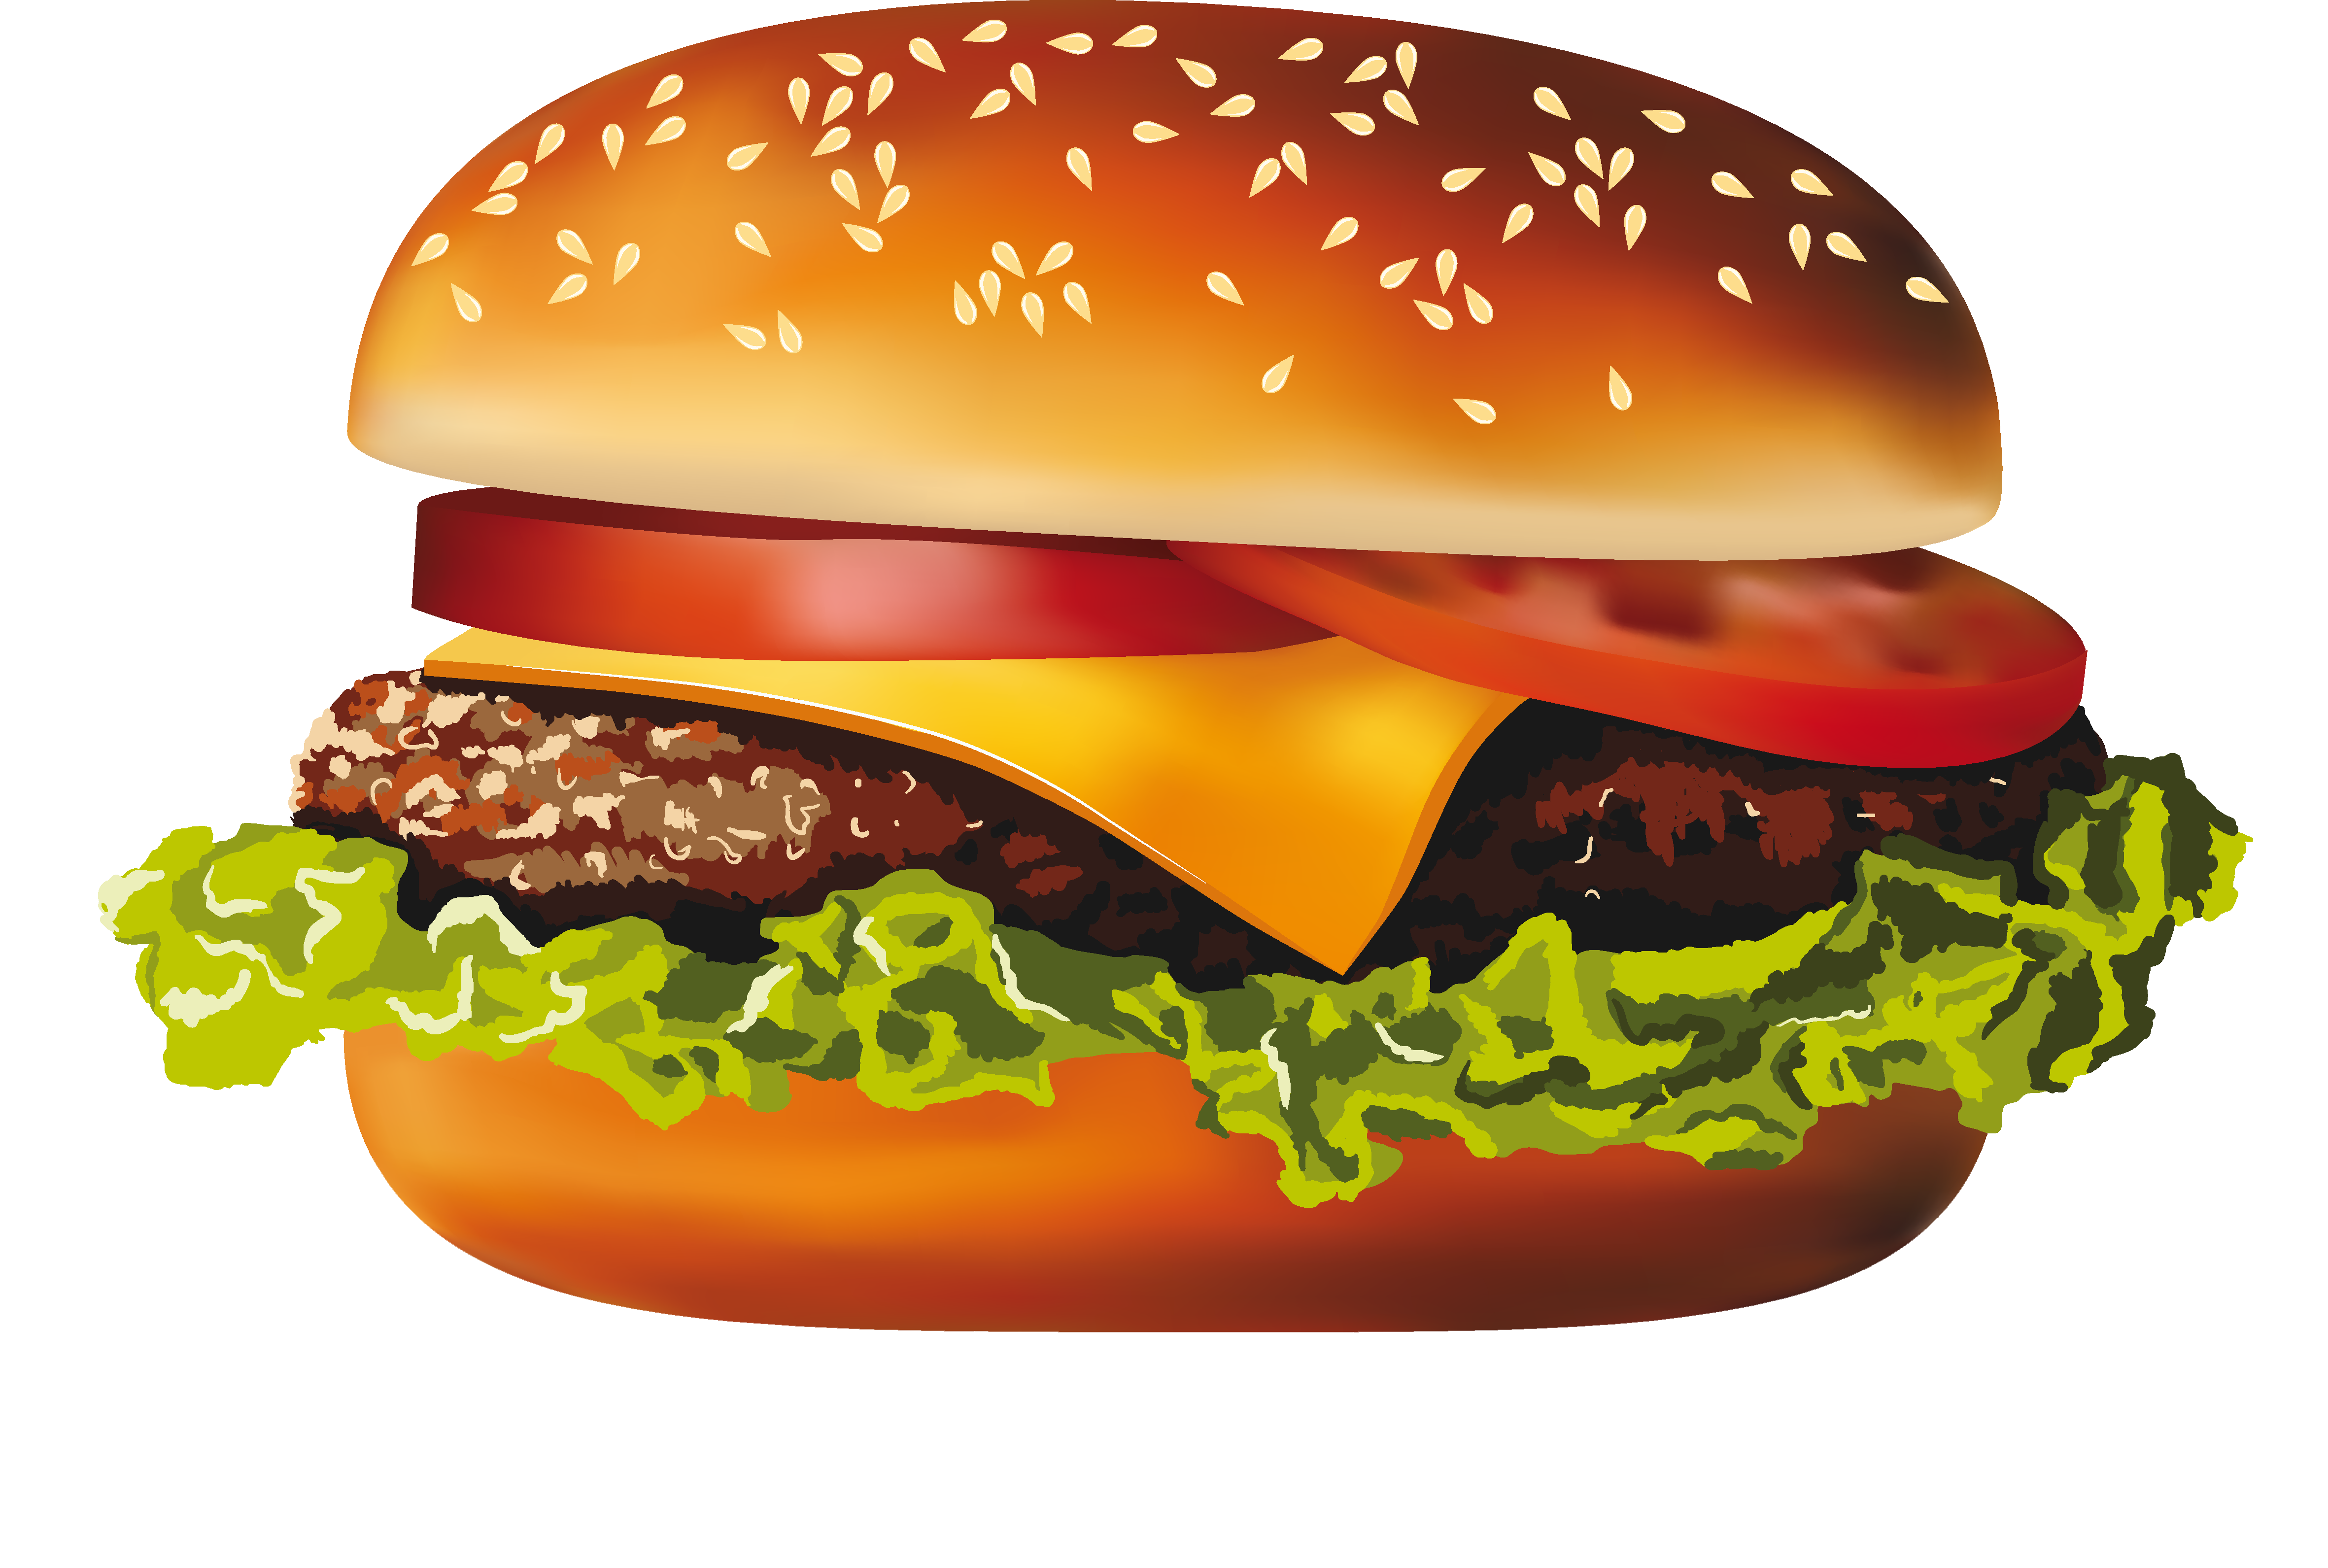 طبیعی ترین نقاشی همبرگر ویژه به شکل دوربری شده